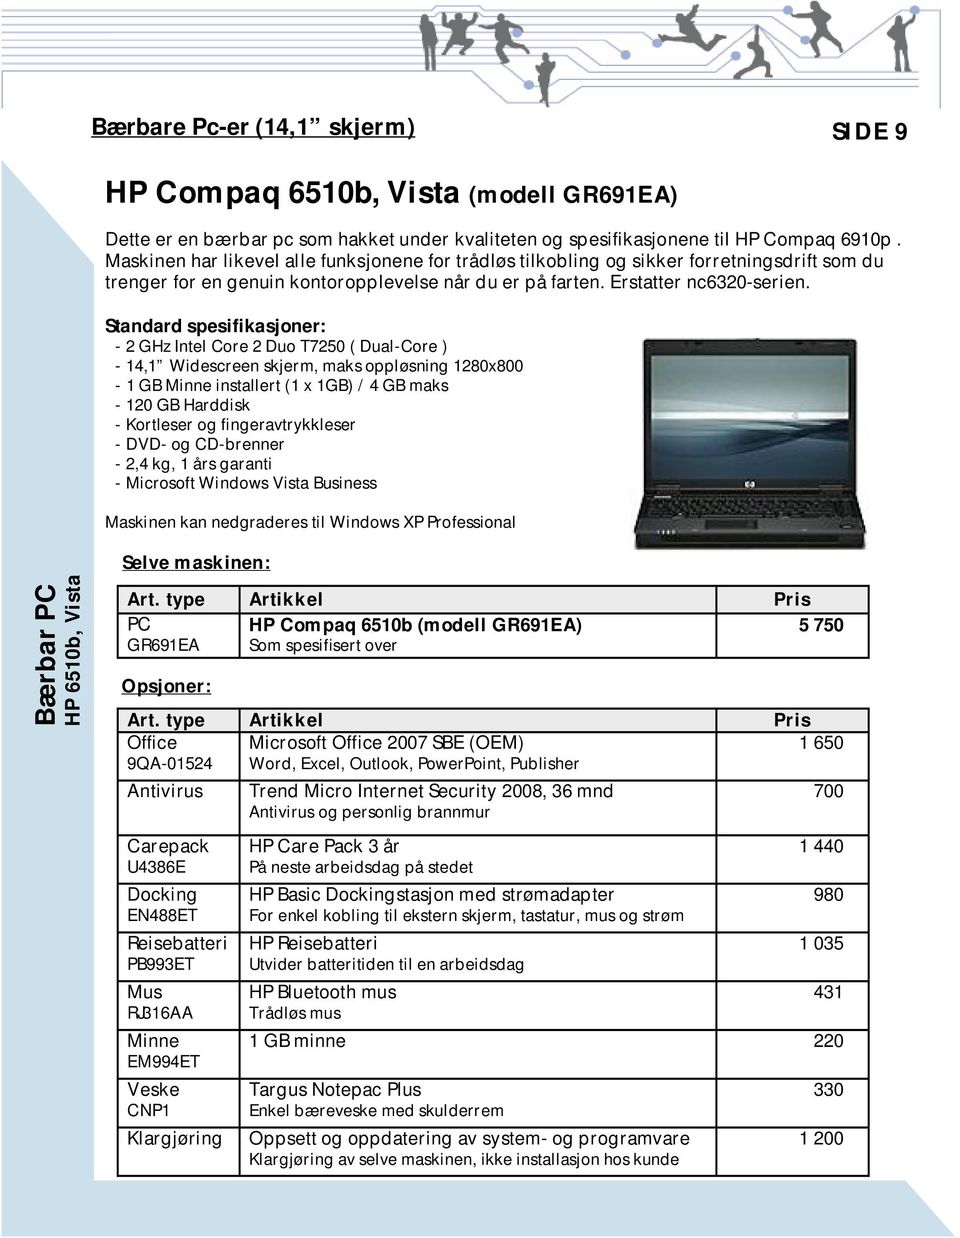 Standard spesifikasjoner: - 2 GHz Intel Core 2 Duo T7250 ( Dual-Core ) - 14,1 Widescreen skjerm, maks oppløsning 1280x800-1 GB Minne installert (1 x 1GB) / 4 GB maks - 120 GB Harddisk - Kortleser og